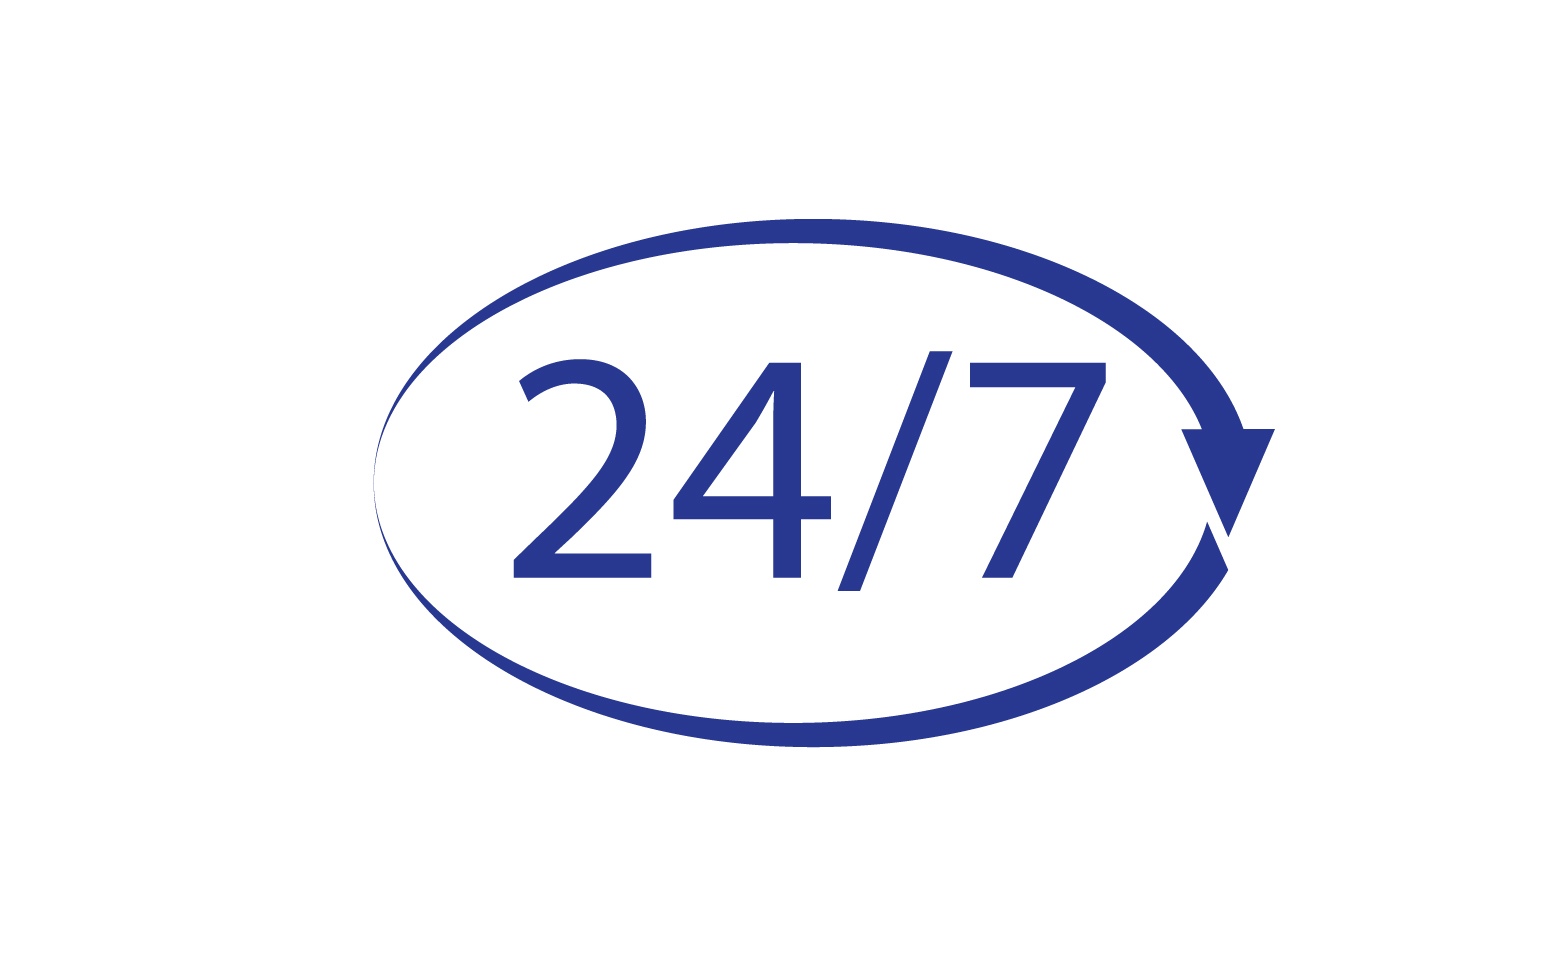 24 hour time icon logo design v41